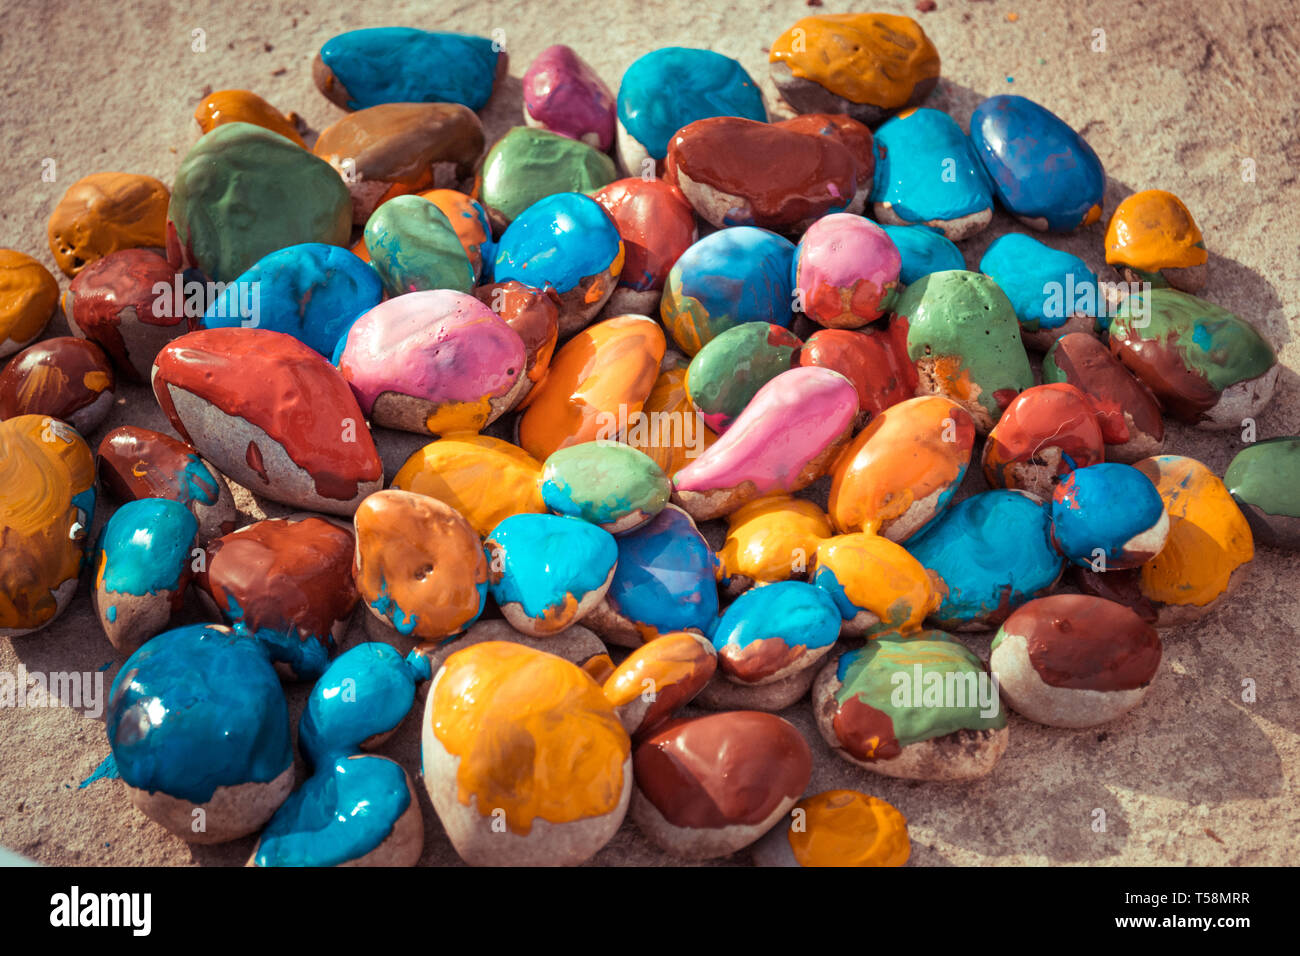 Pietre colorate di vernici colorate in diversi colori giacciono su una superficie piana. Close-up Foto Stock